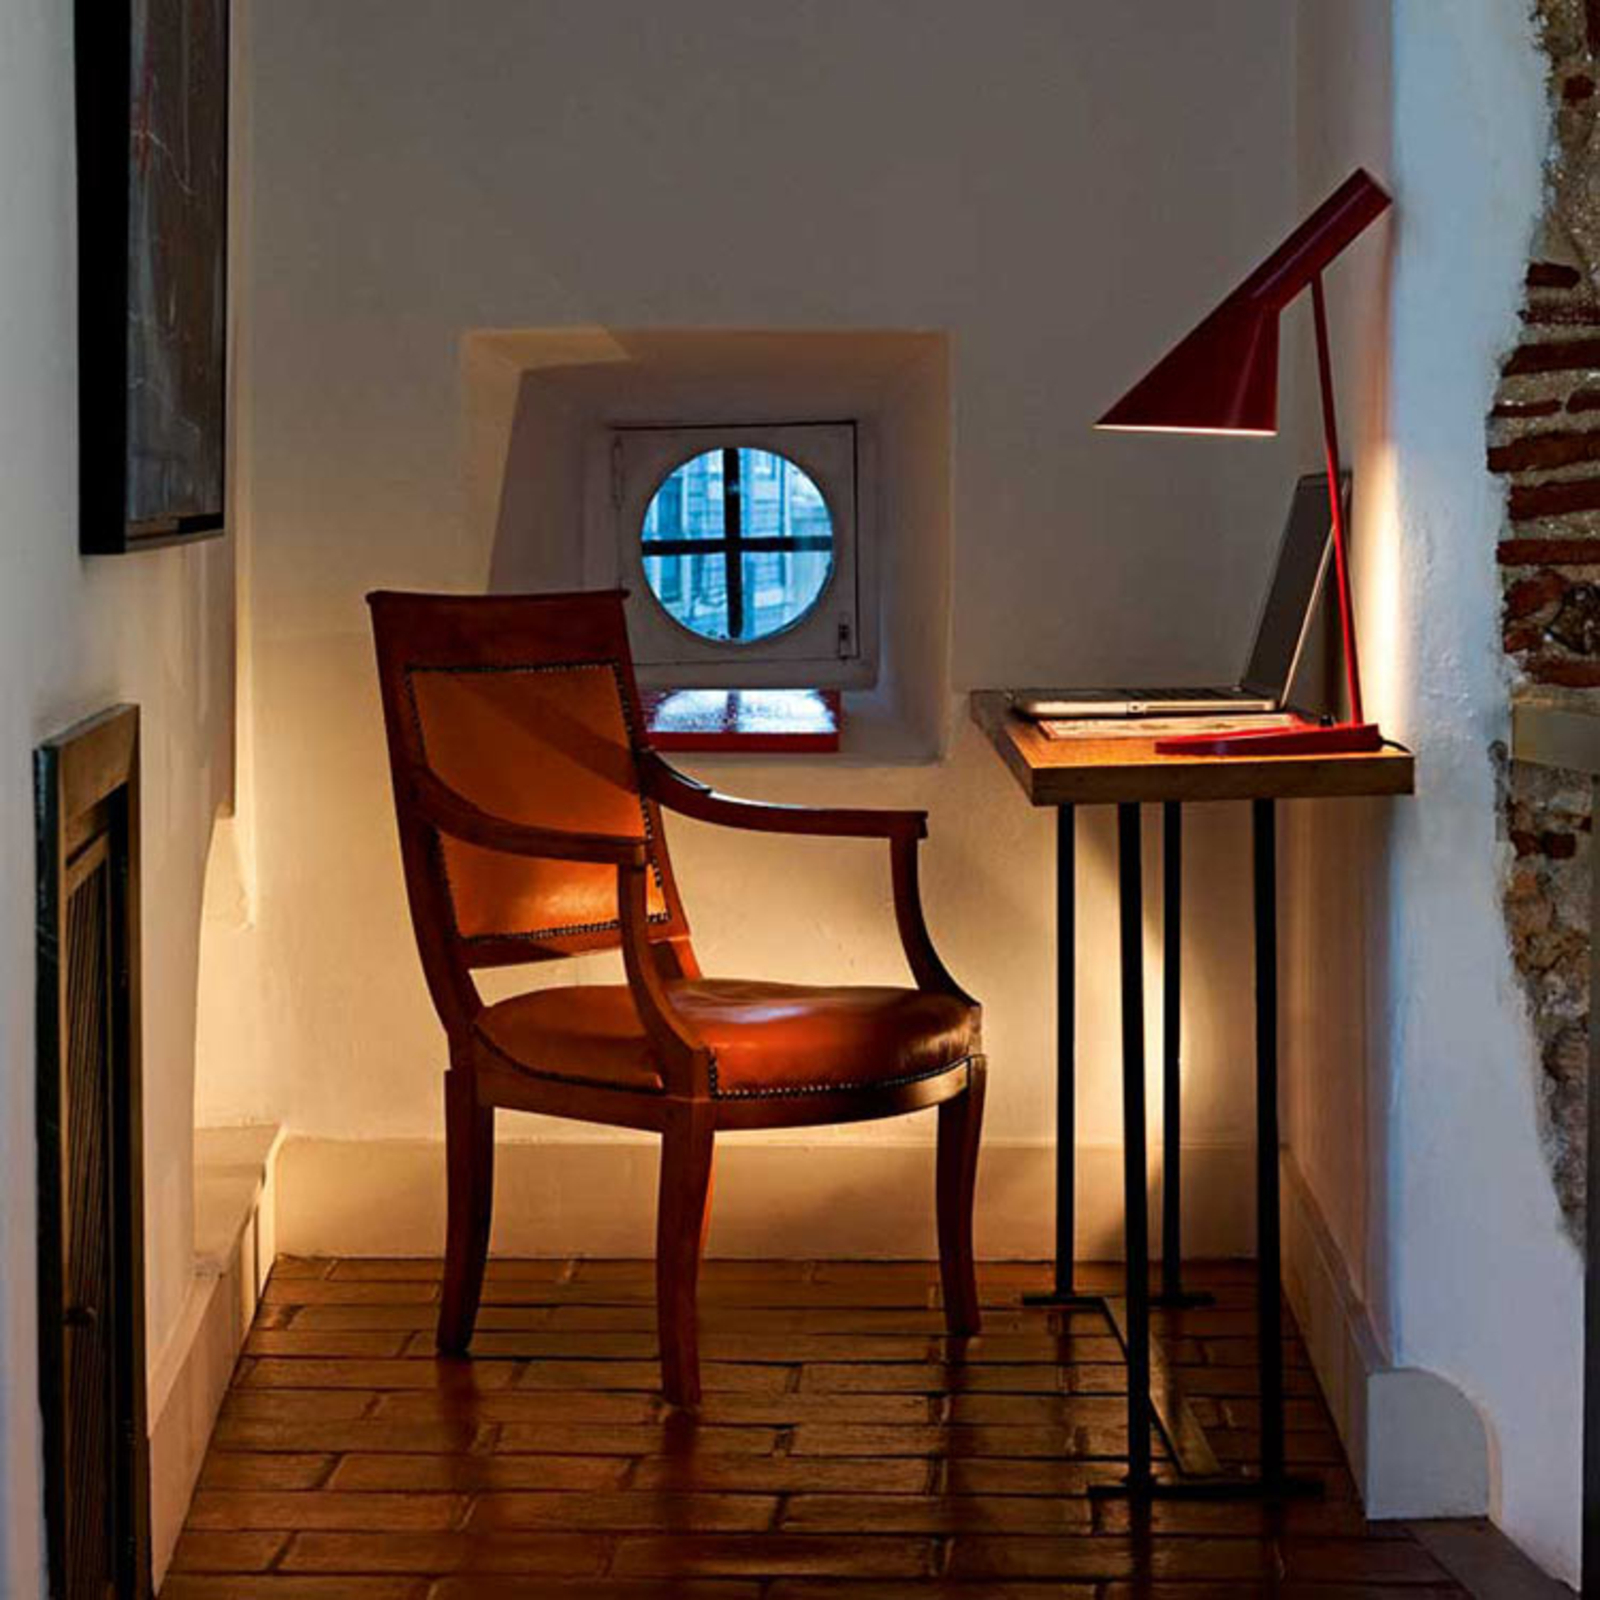 Louis Poulsen AJ - lampă masă designer, roșu-rugin